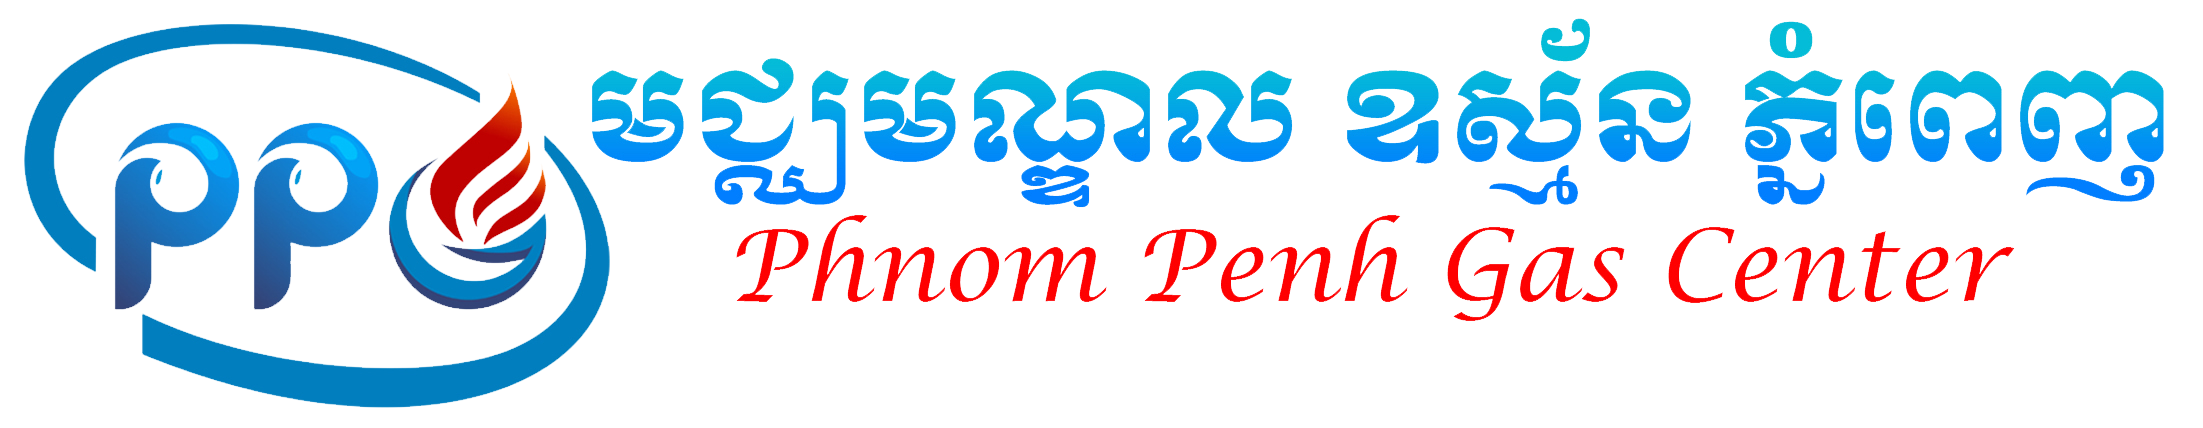 Phnom Penh Gas Center